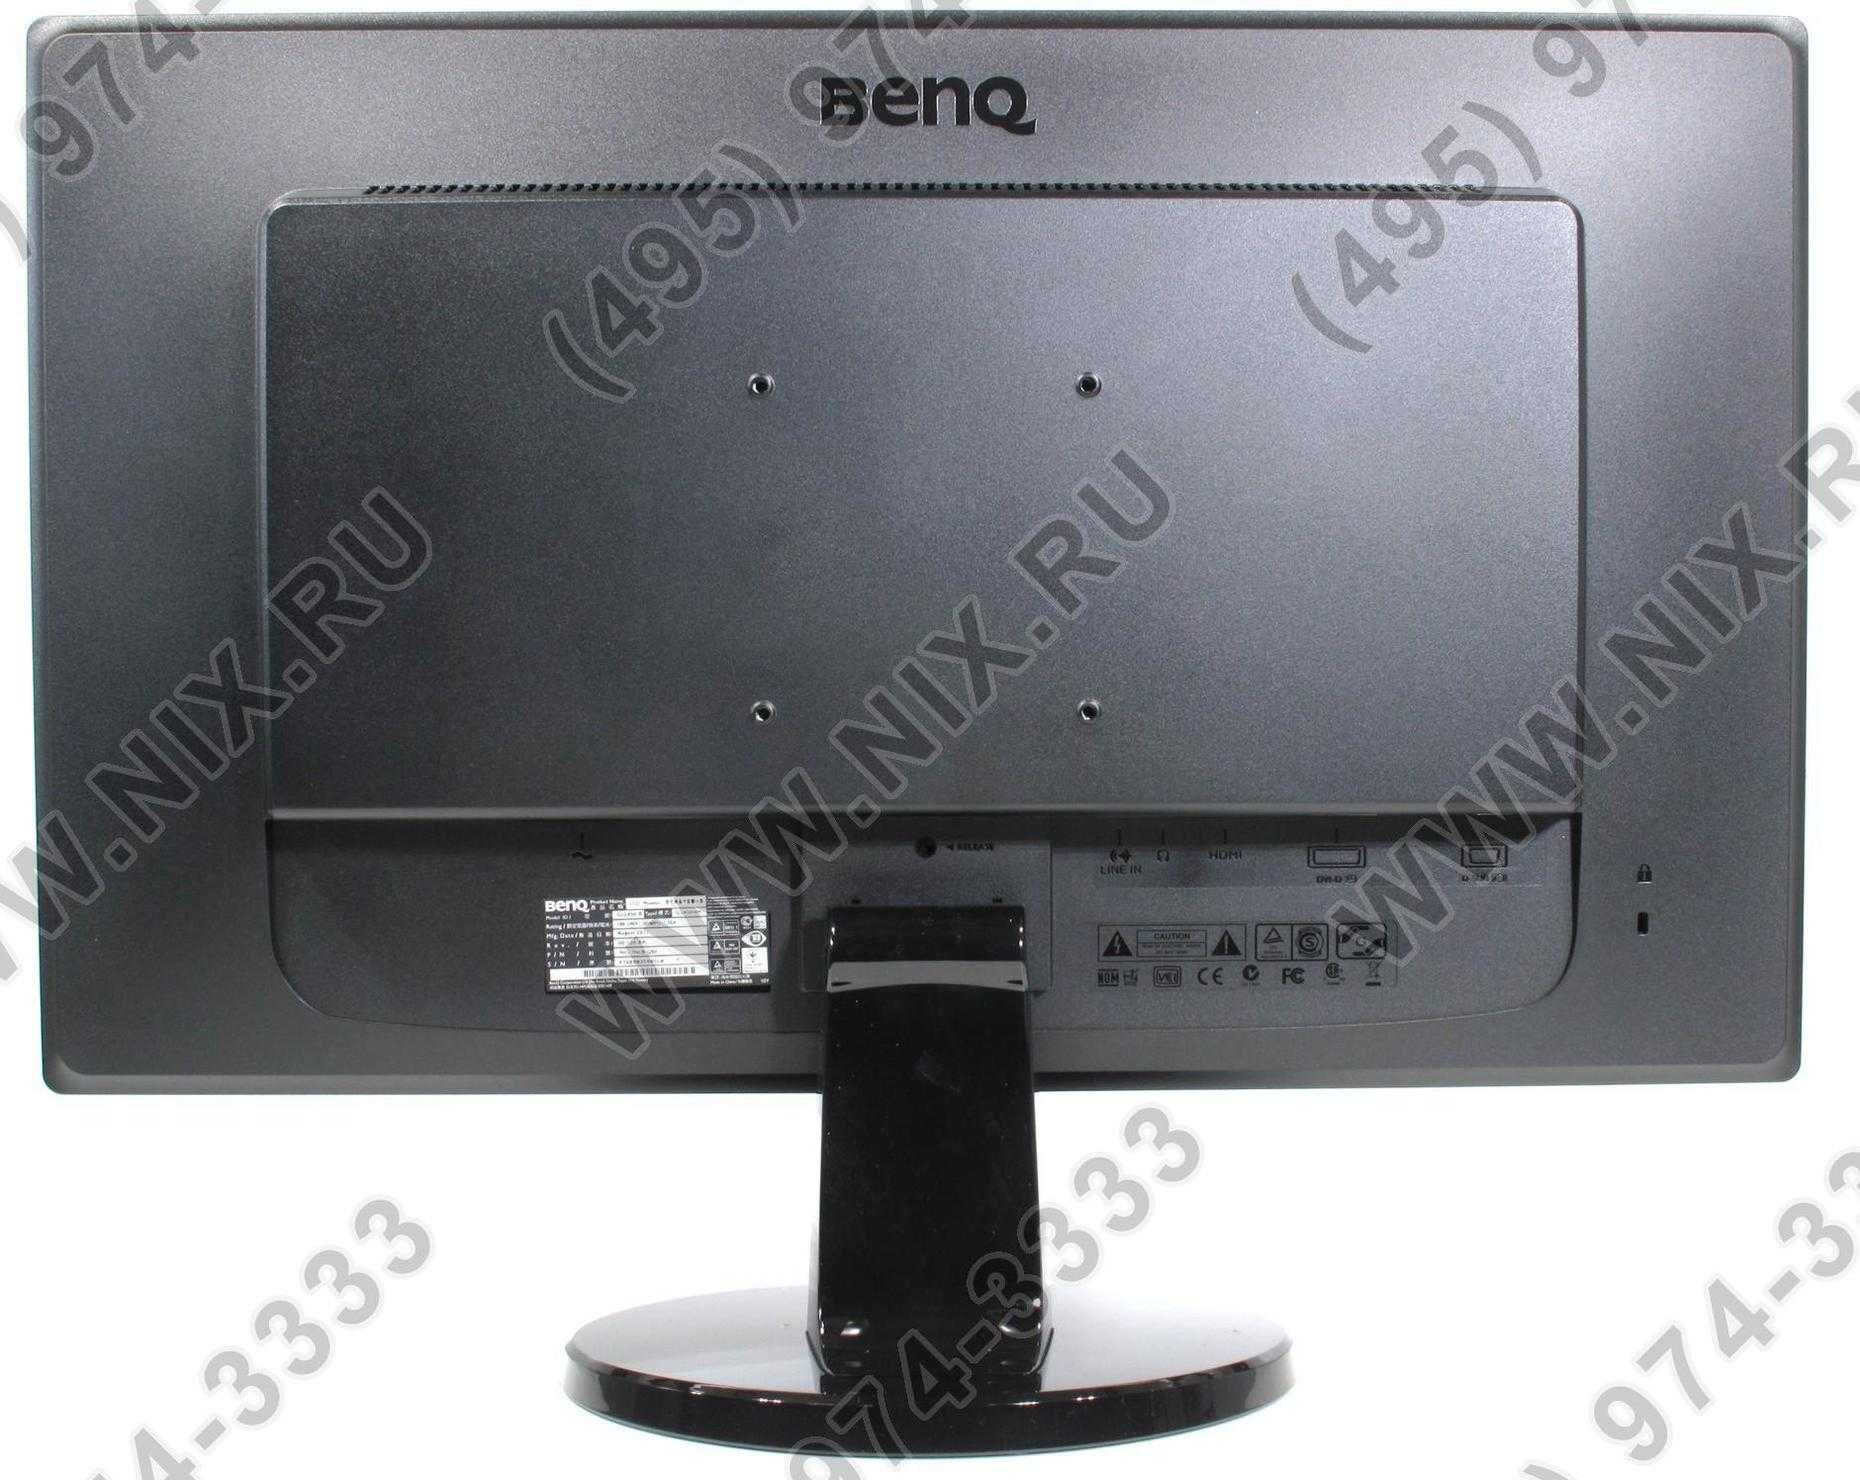 Жк монитор 24" benq gw2450hm — купить, цена и характеристики, отзывы